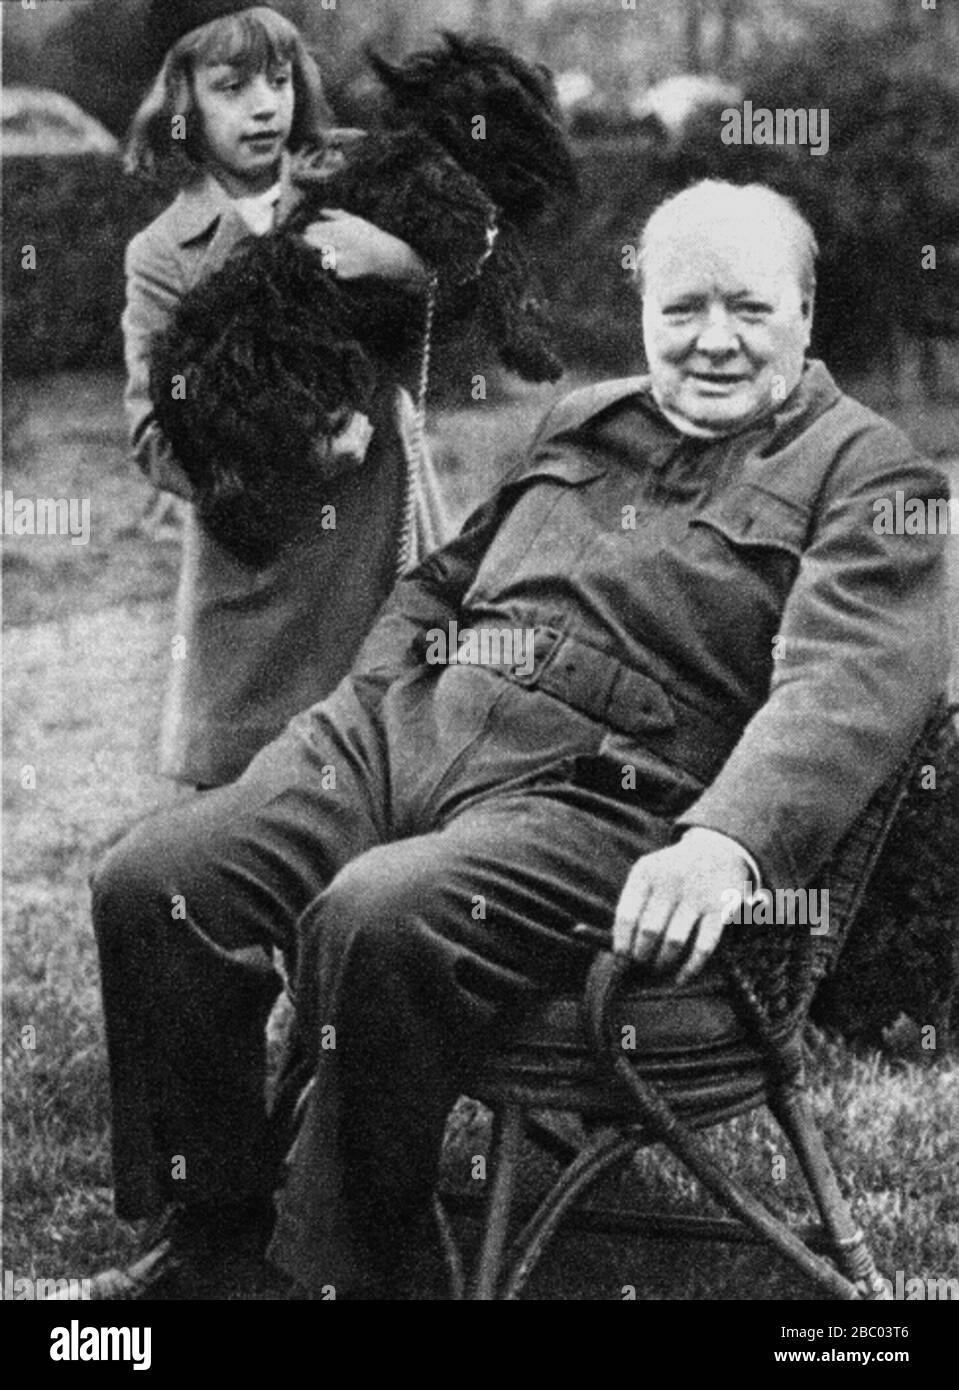 Churchill avec Diana Hopkins, fille de Harry Hopkins, conseillère de Roosevelt en politique étrangère. Avec eux le chien du président, 'Fala'. Décembre 1941 Banque D'Images